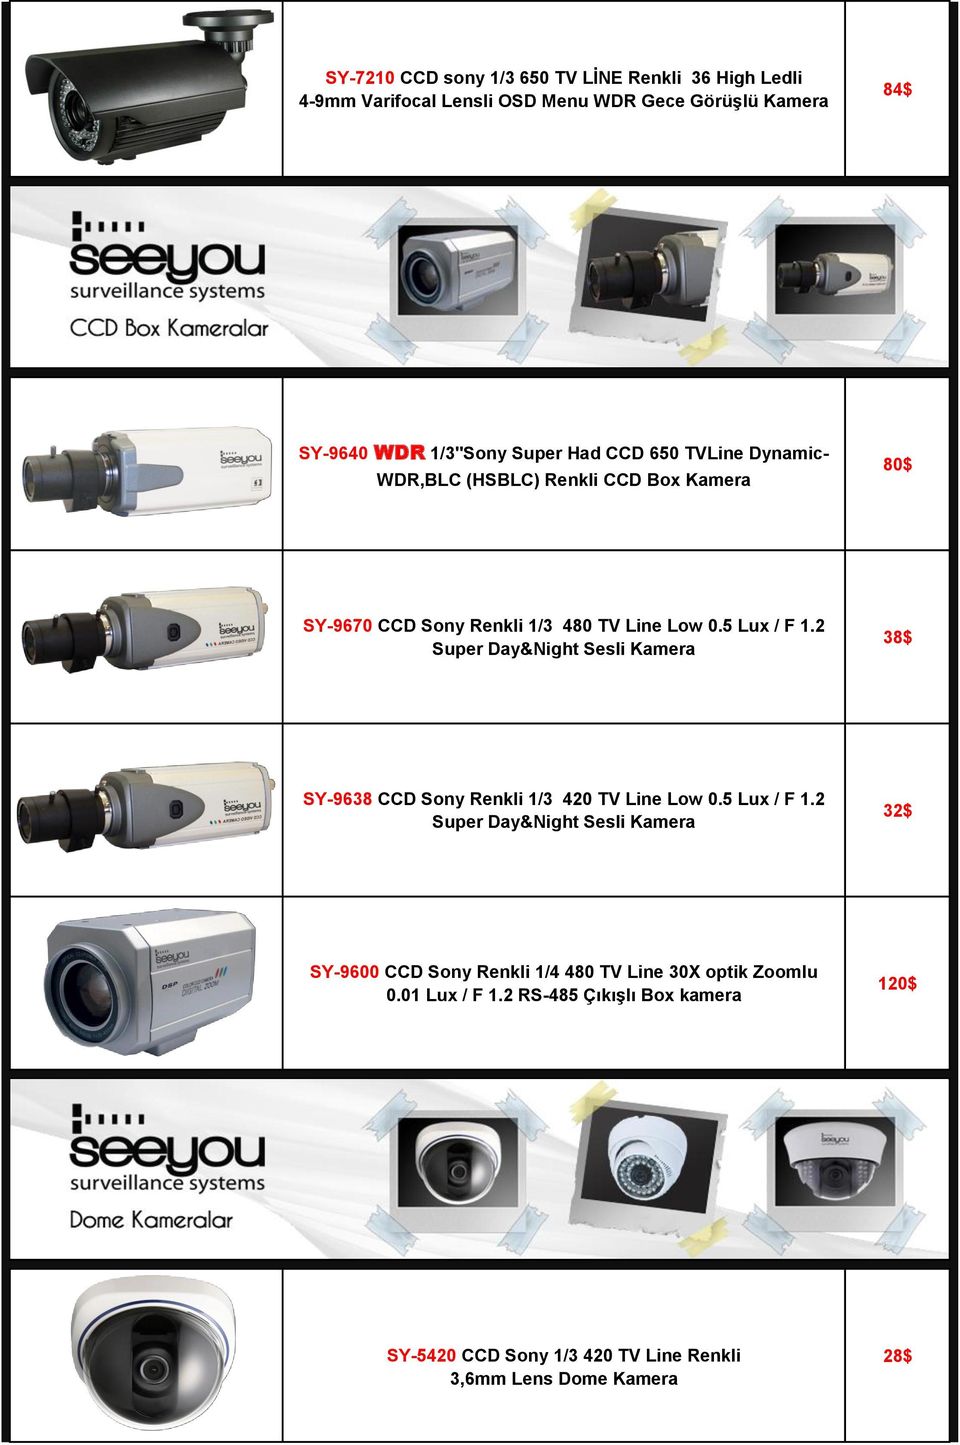 2 Super Day&Night Sesli Kamera 38$ SY-9638 CCD Sony Renkli 1/3 420 TV Line Low 0.5 Lux / F 1.